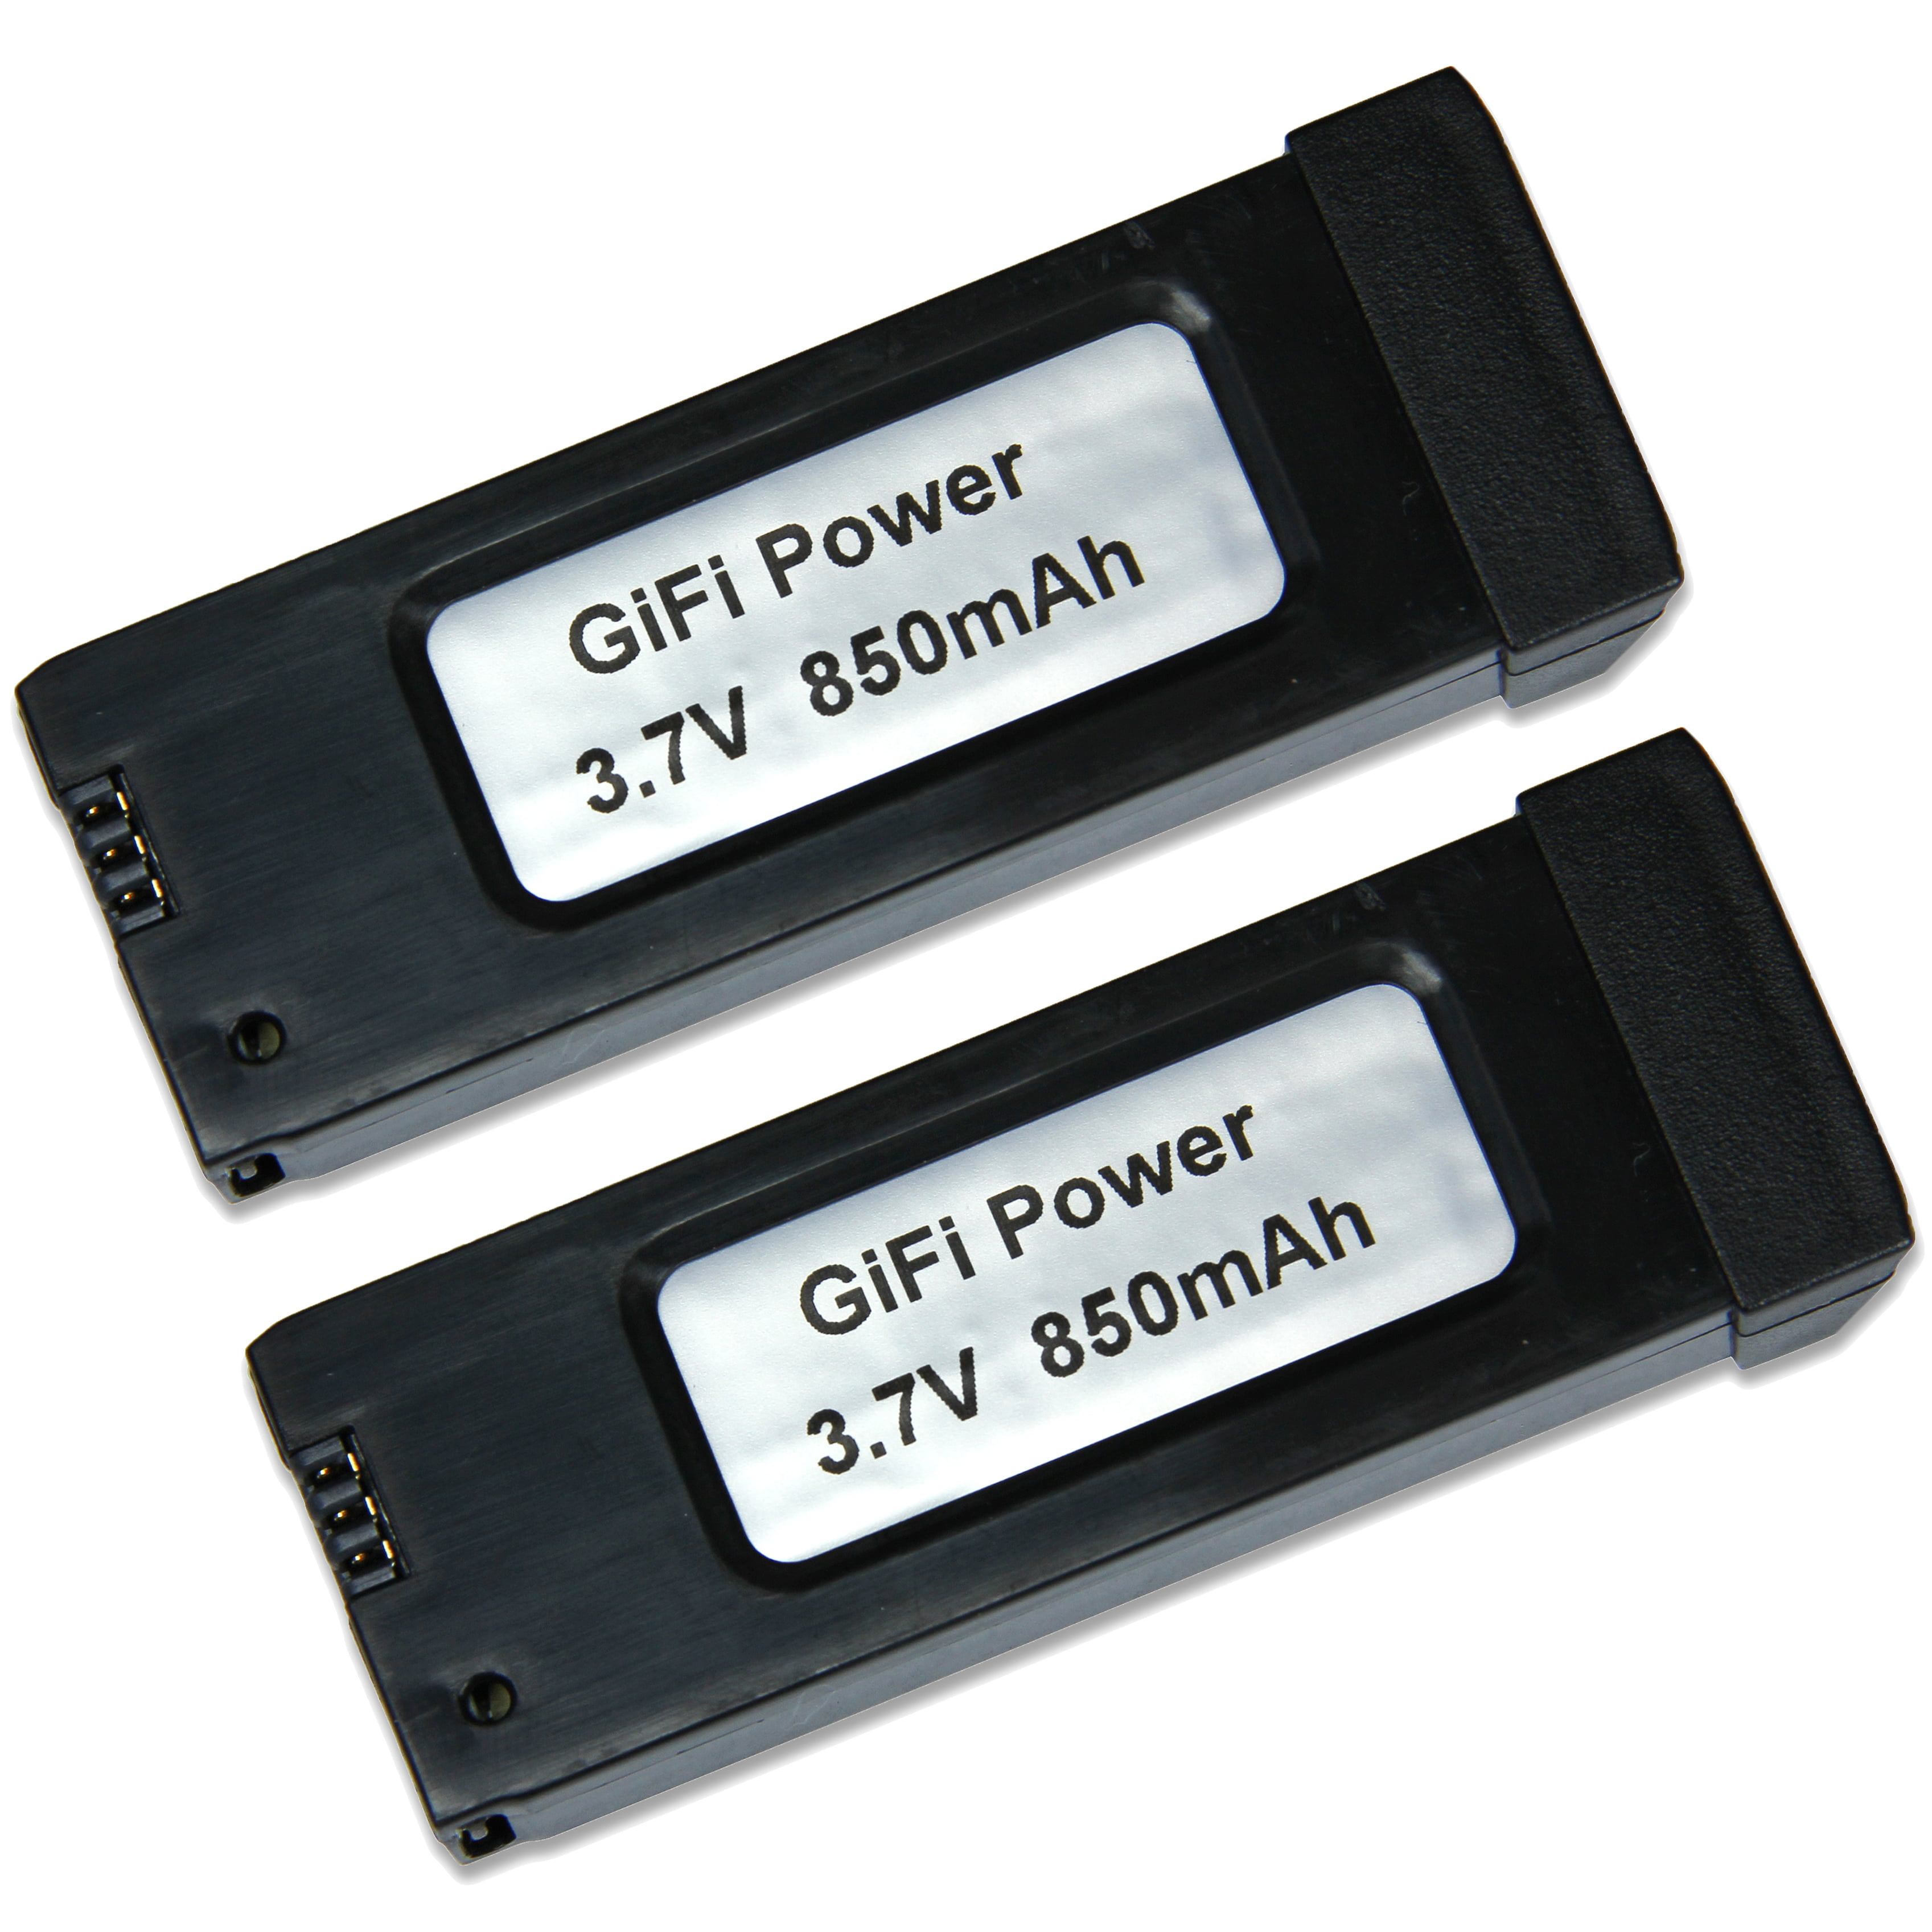 MaximalPower GiFi Power® Battery for Eachine E58 (2pk)